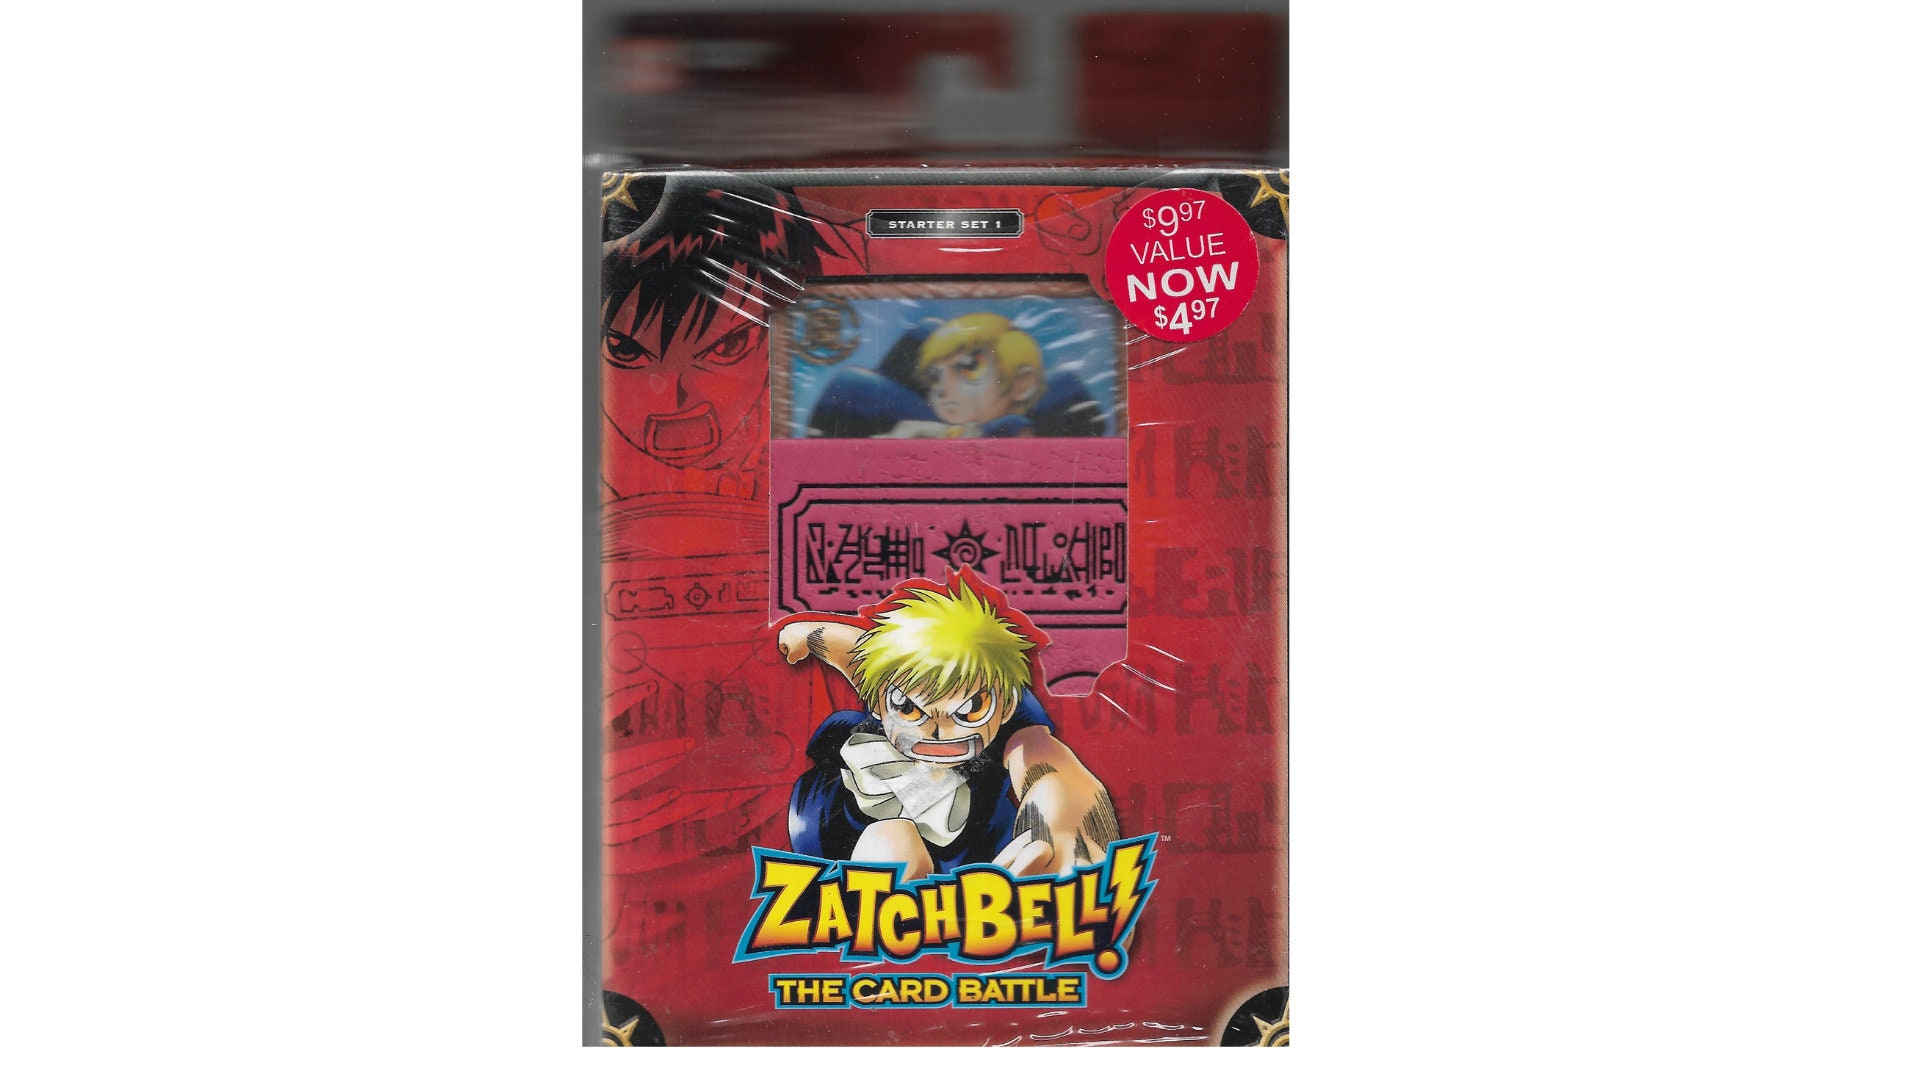 Zatch Bell The Card Battle